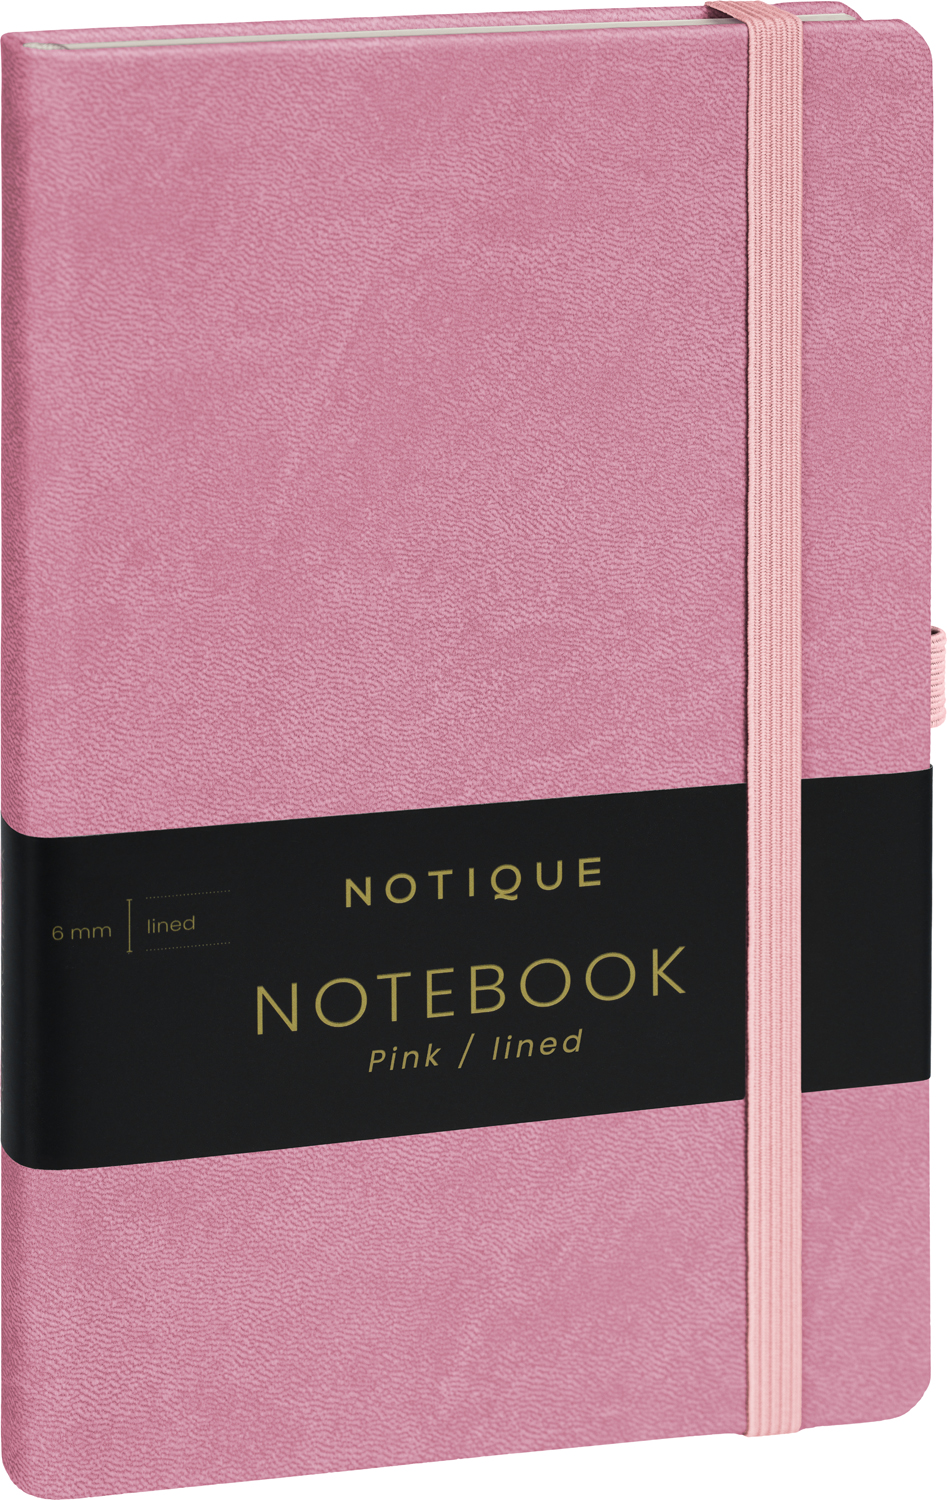 Linkovaný zápisník Růžový, 13x21 cm